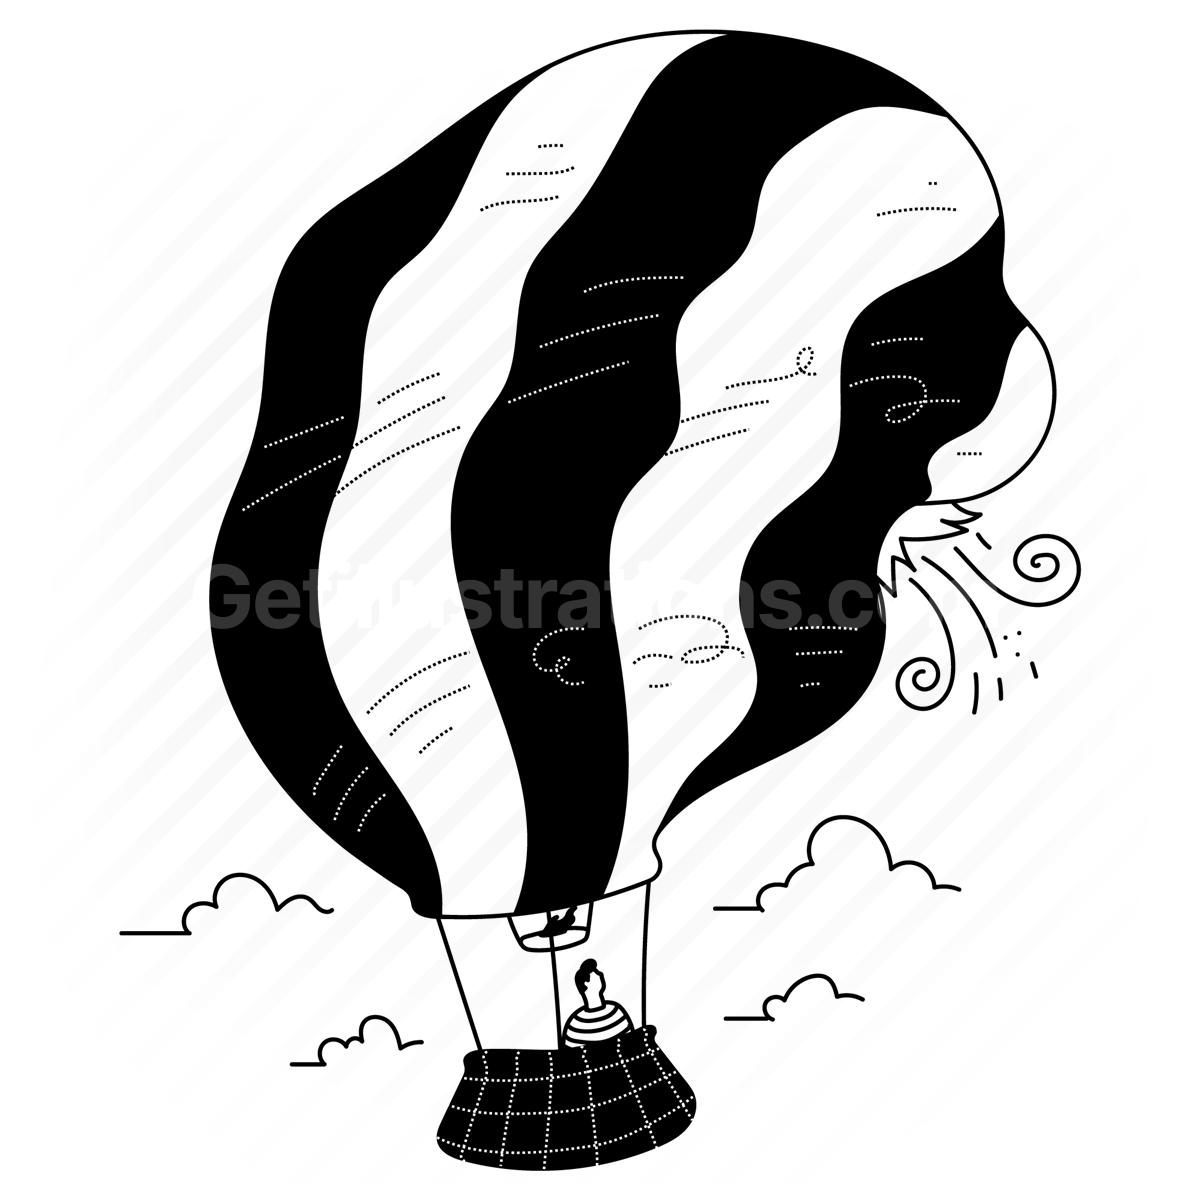 hot air balloon, damage, damaged, disaster, crash, transport